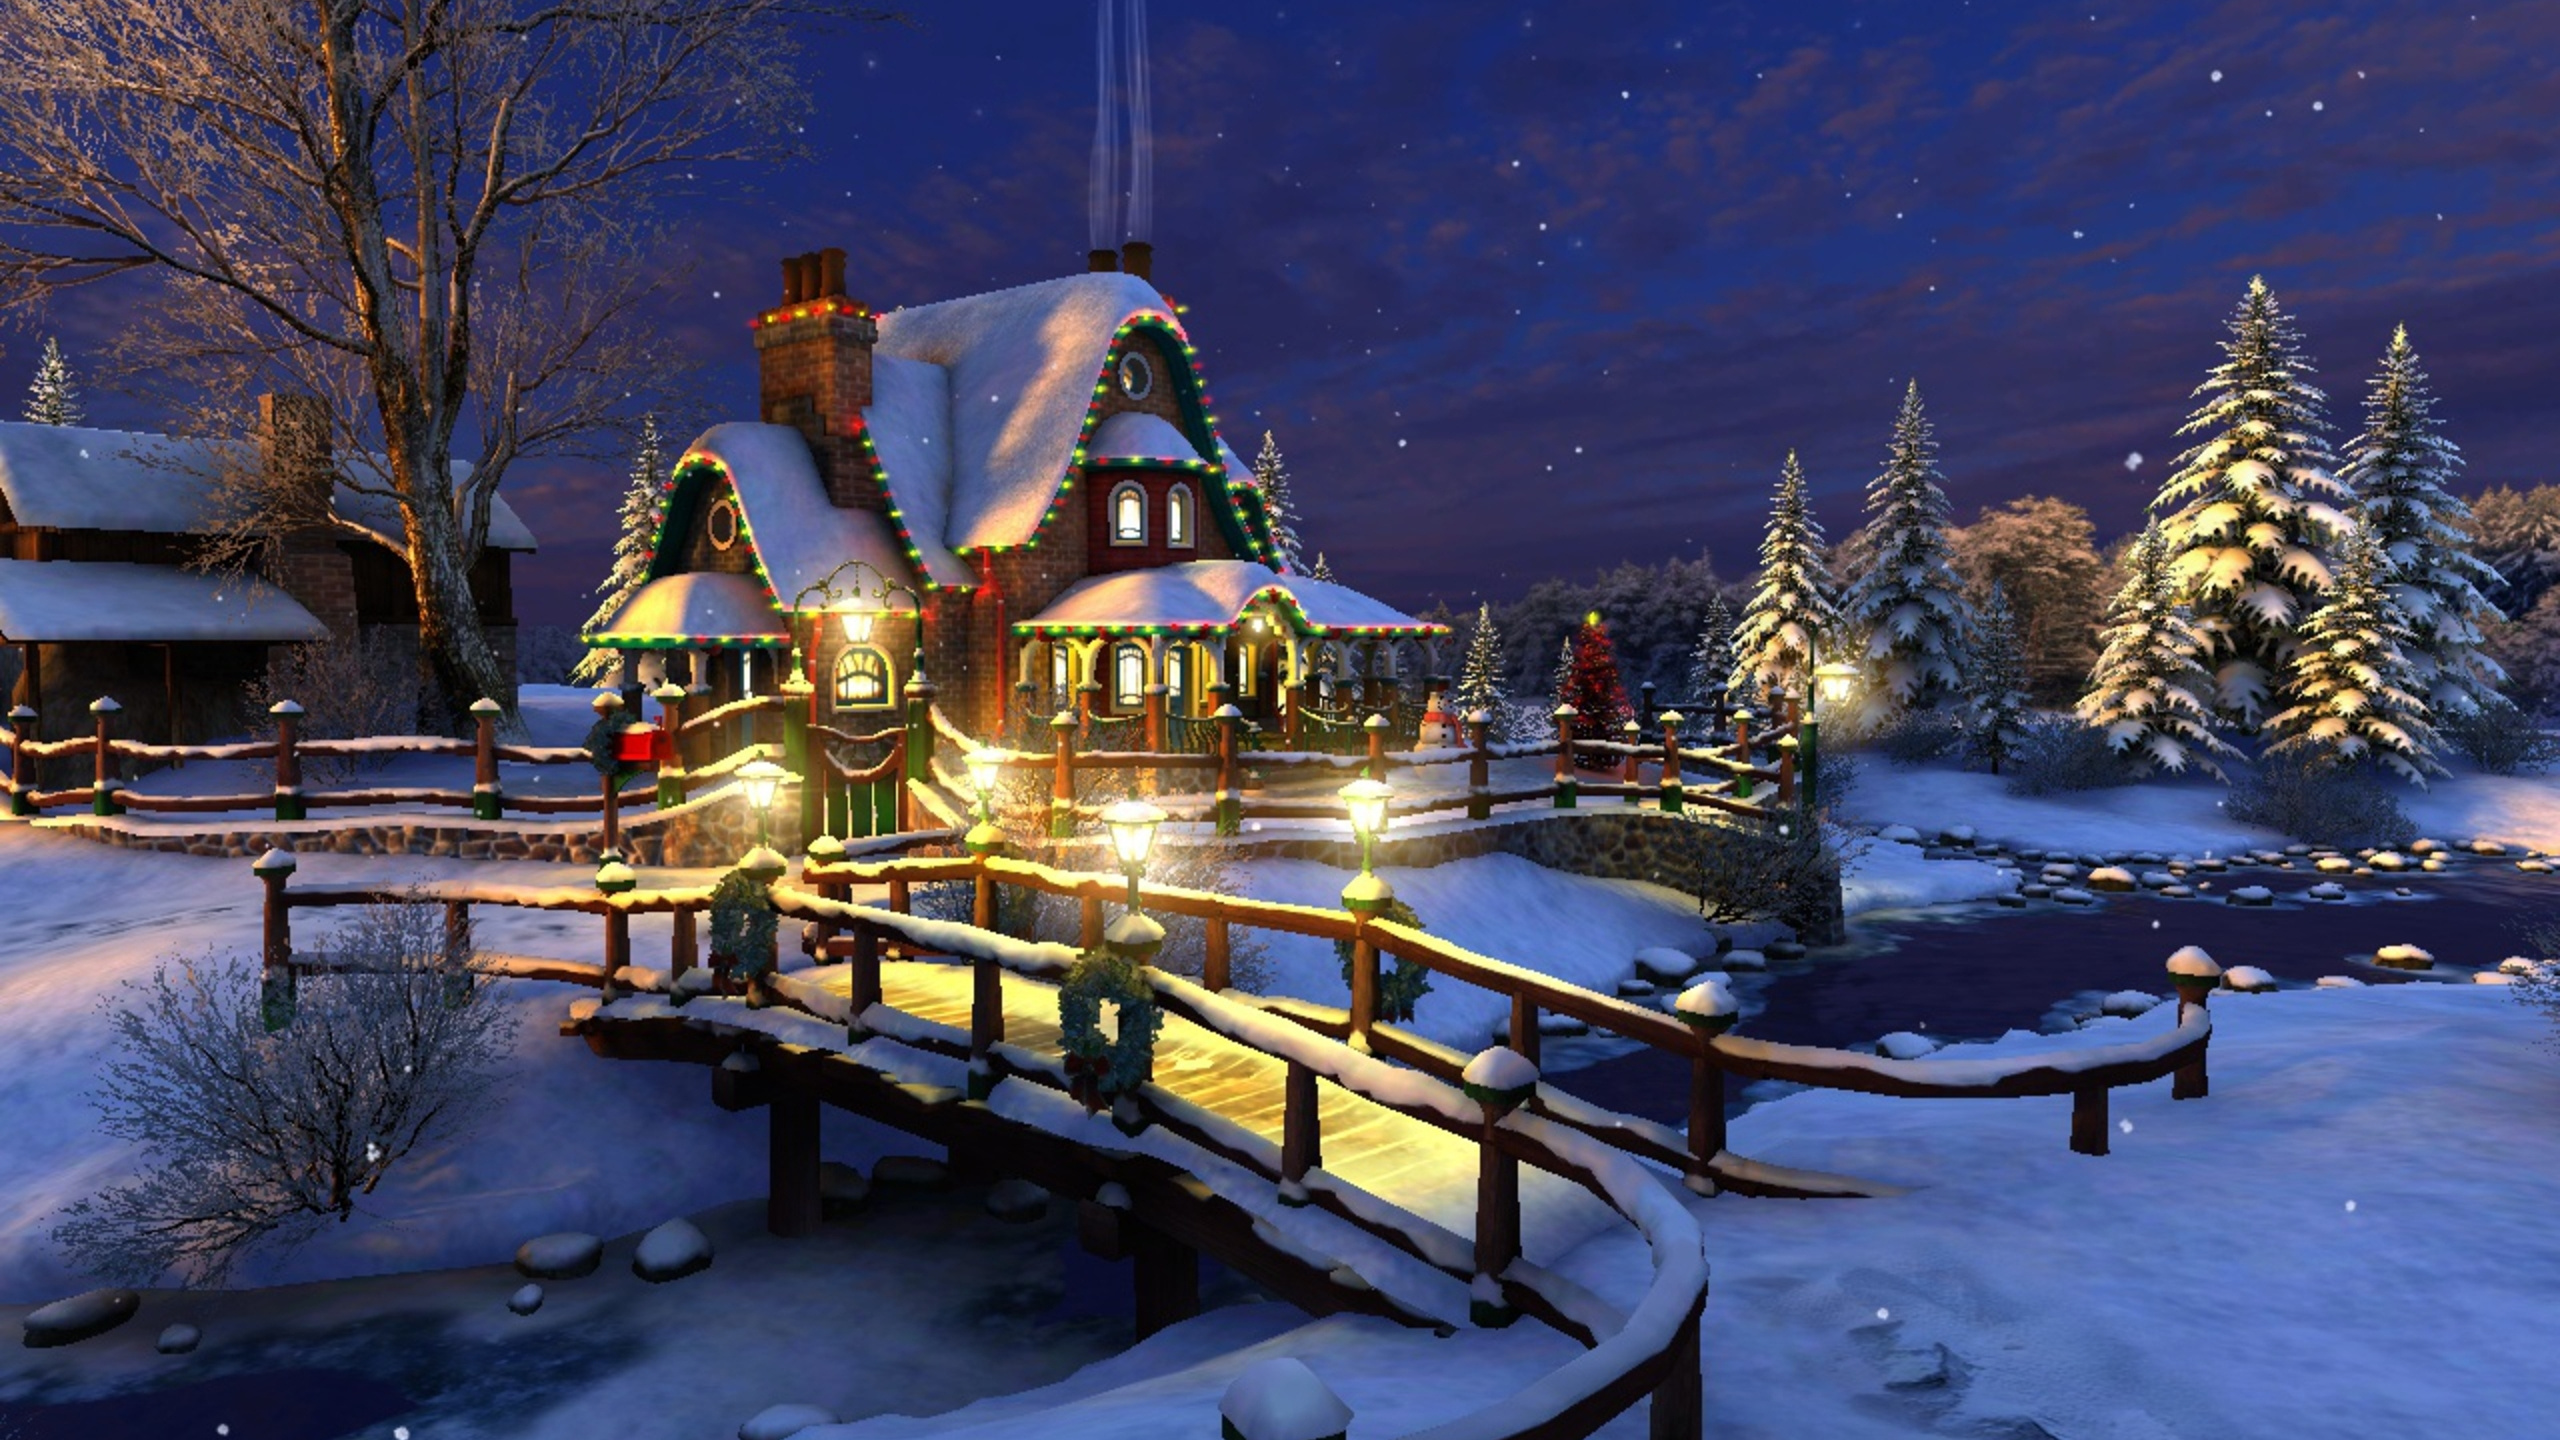 冻结, 圣诞前夕, 礼物, 旅游景点, 圣诞树 壁纸 2560x1440 允许